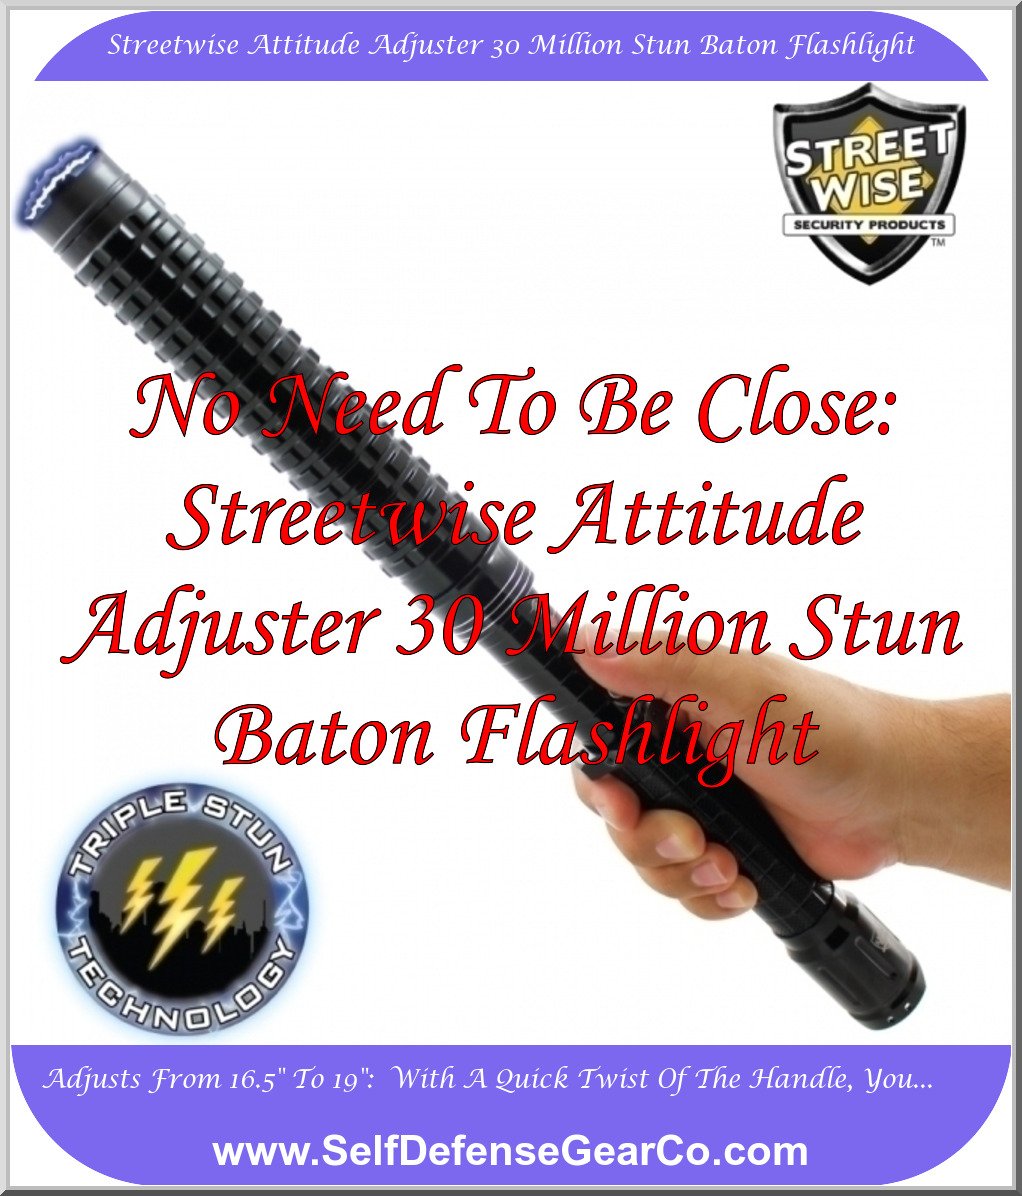 Streetwise Attitude Adjuster 30 Million Stun Baton Flashlight